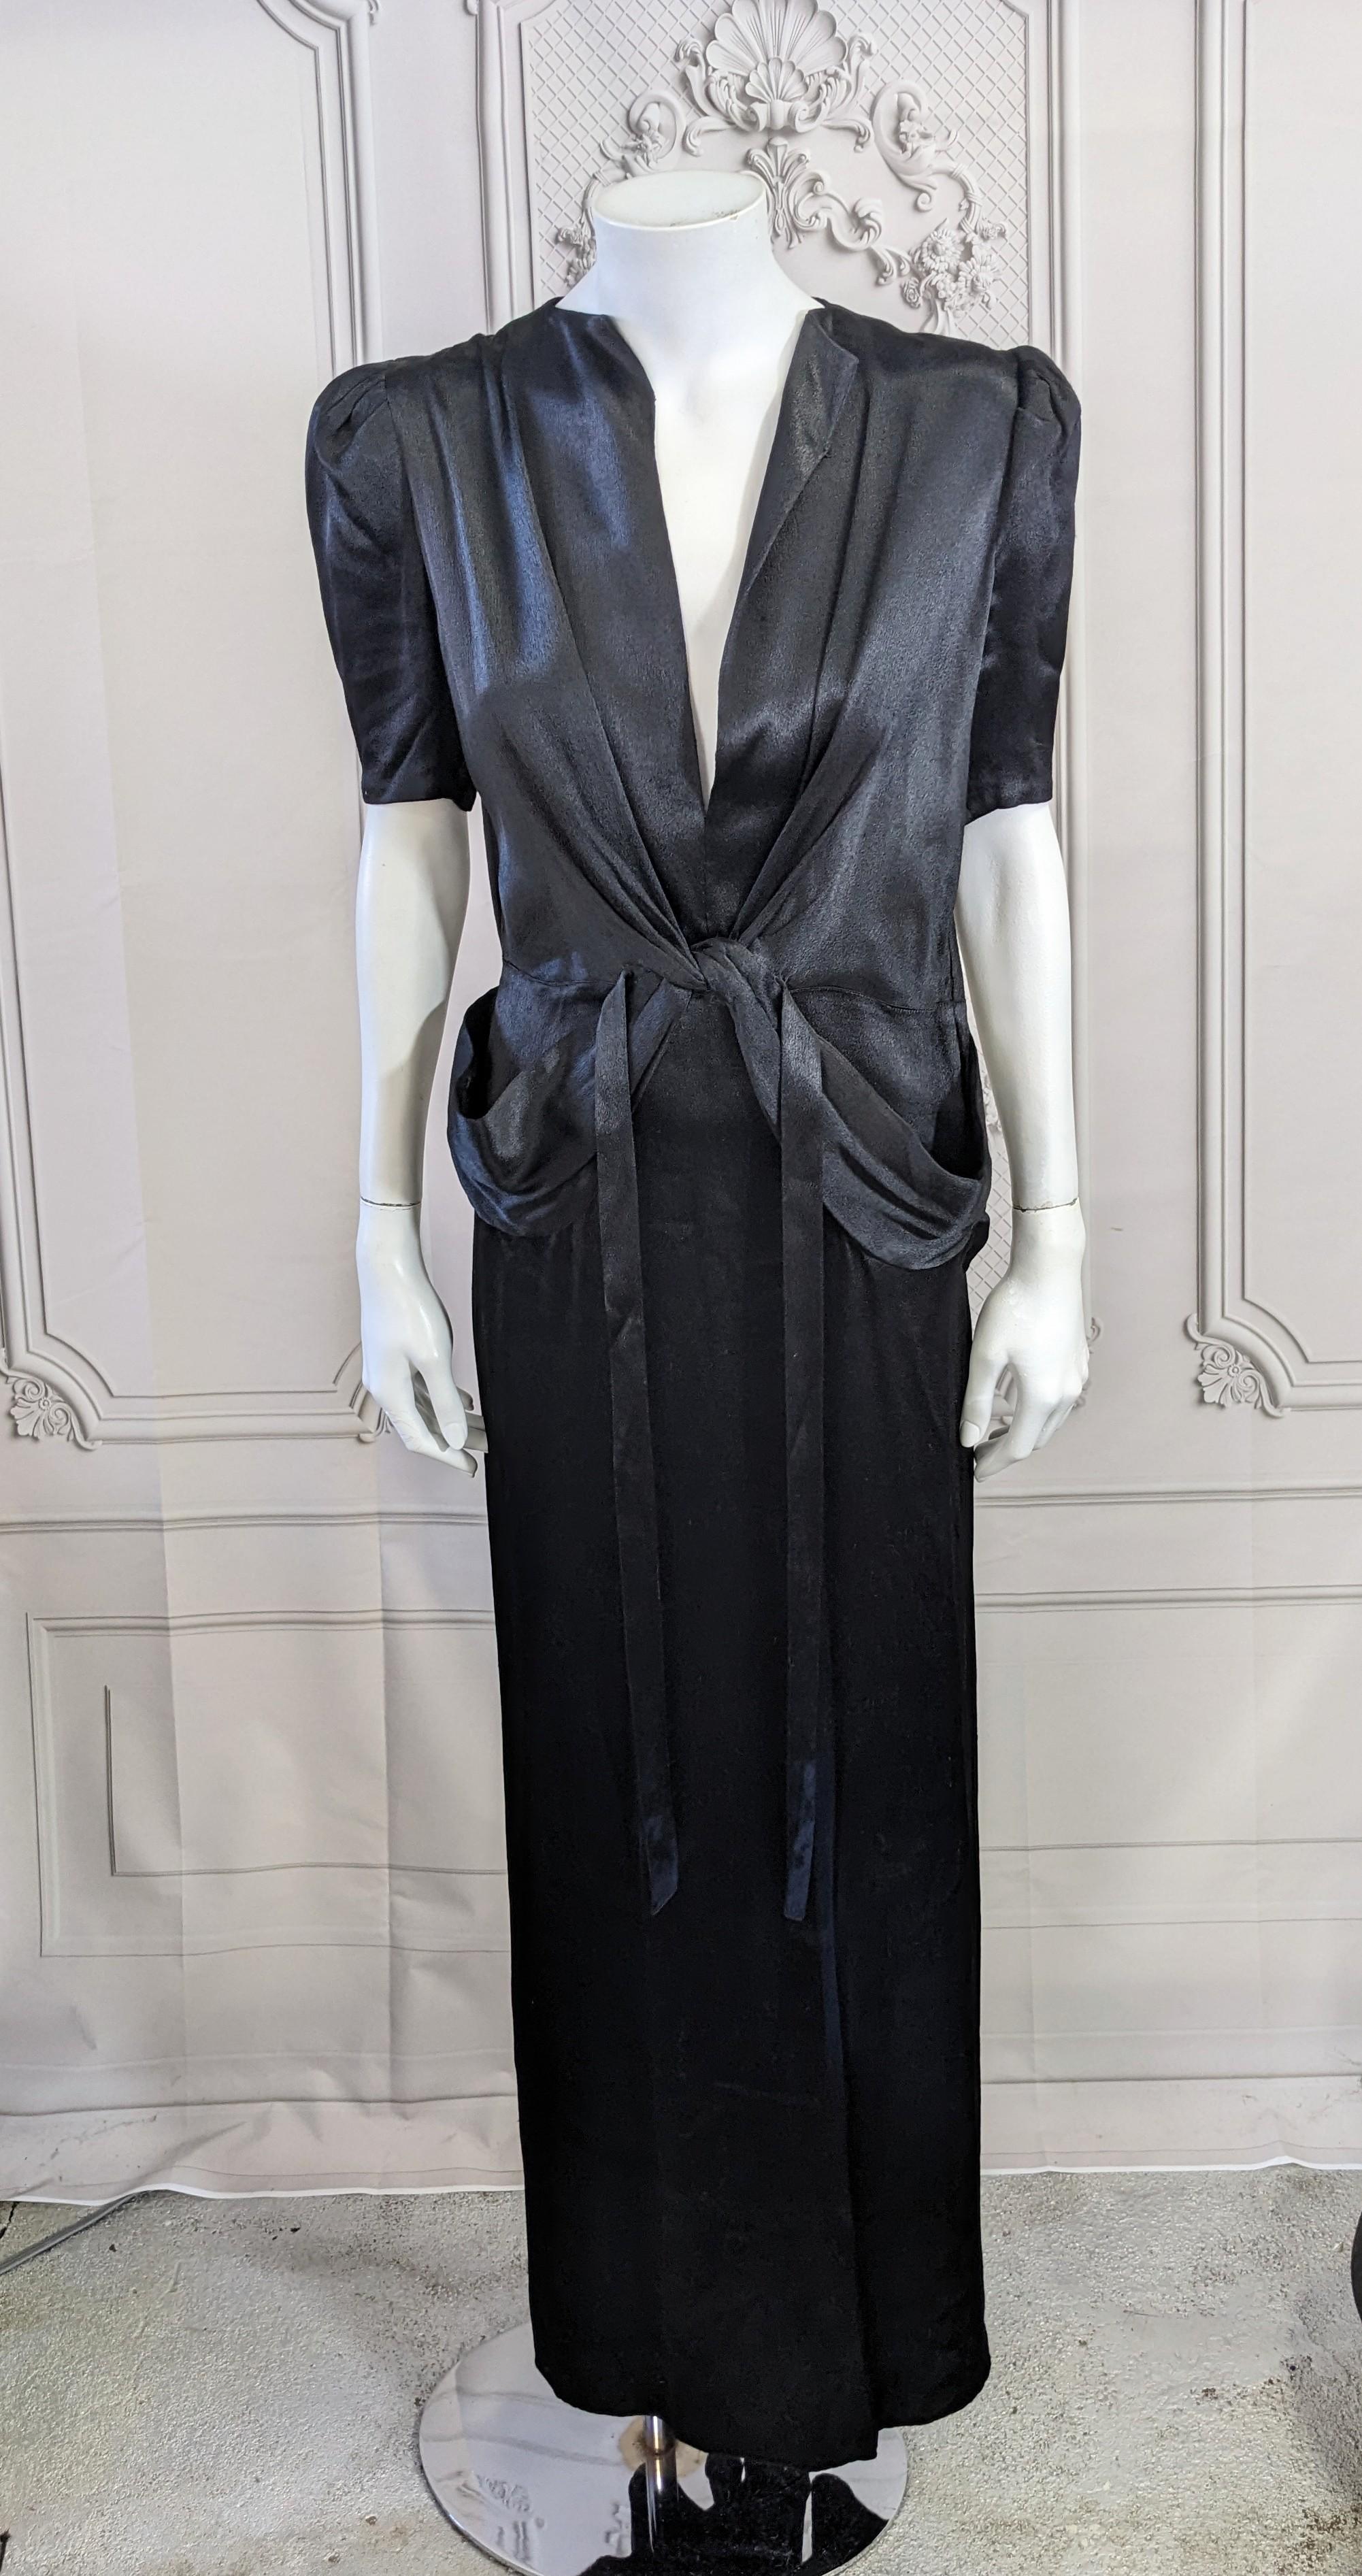 Zeitloses Retro-Satin-Glamour-Kleid aus den 1940er Jahren. Aus Seidensatin mit Twist-Detail an der Taille, das sich auf die Hüften mit Rosshaar gestützten Bändern erstreckt. Kräftige Schultern mit umgeschlagenen Ärmeln, die im Nacken geschlossen